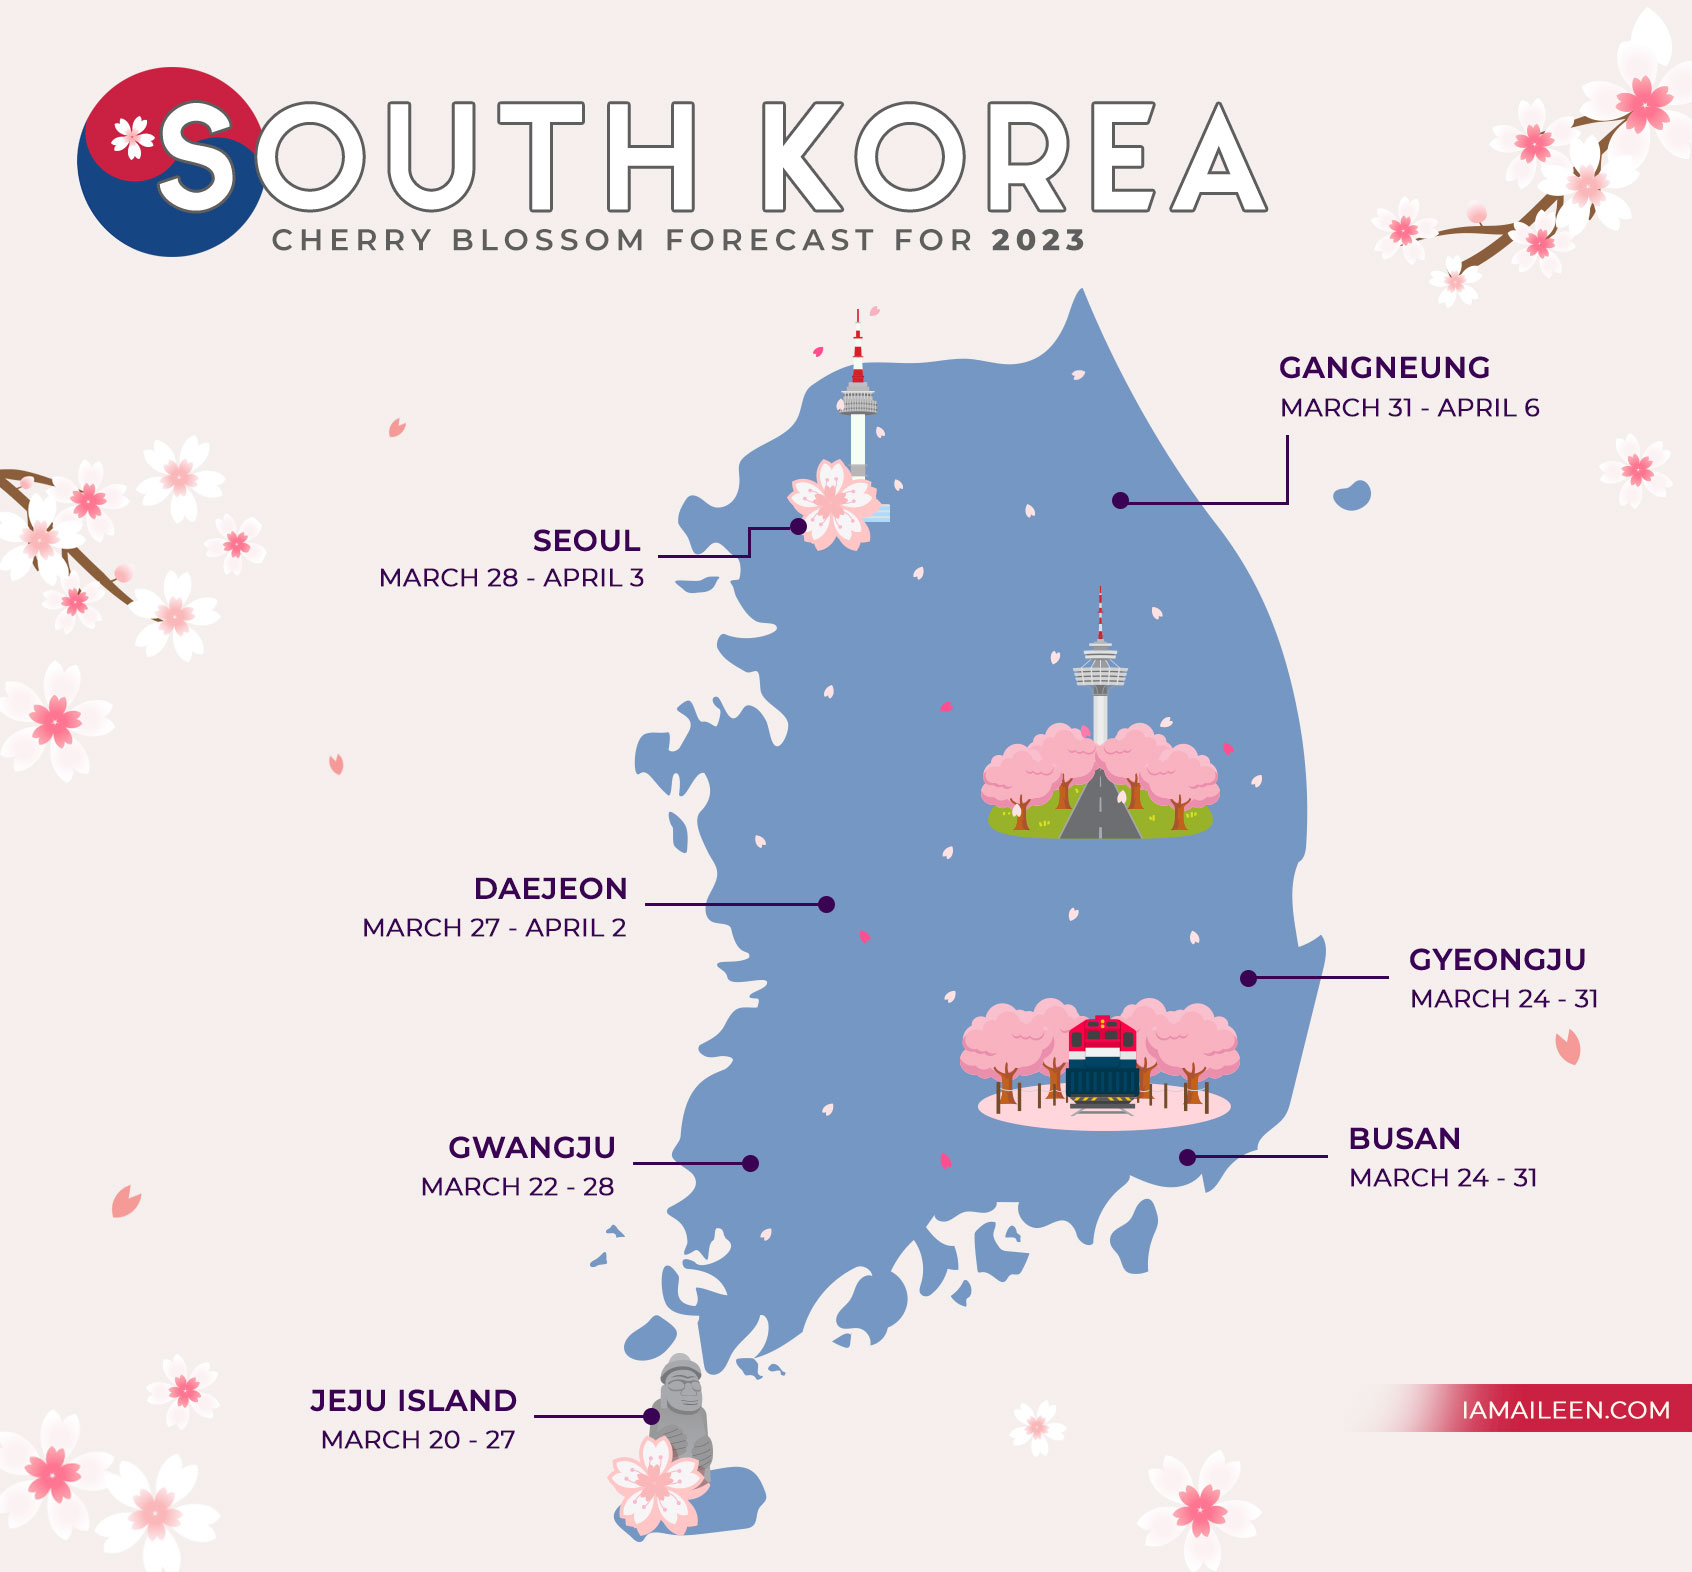 South Korea Cherry Blossom Forecast 2023